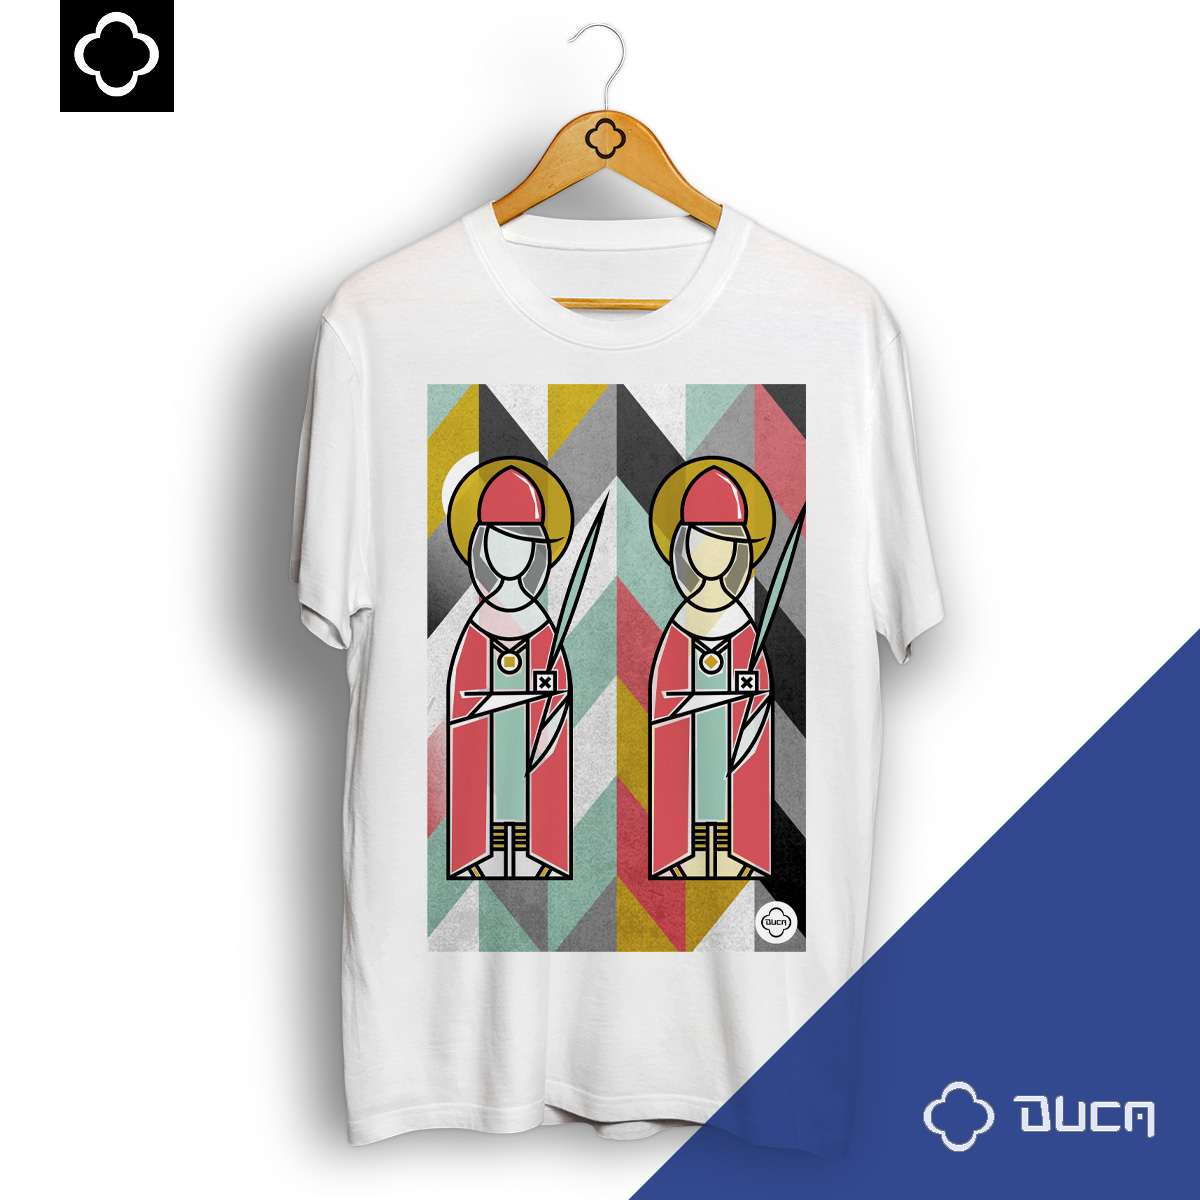 Camiseta Cavalera Estampa Du Dudu e Edu - Branca - Camisetas